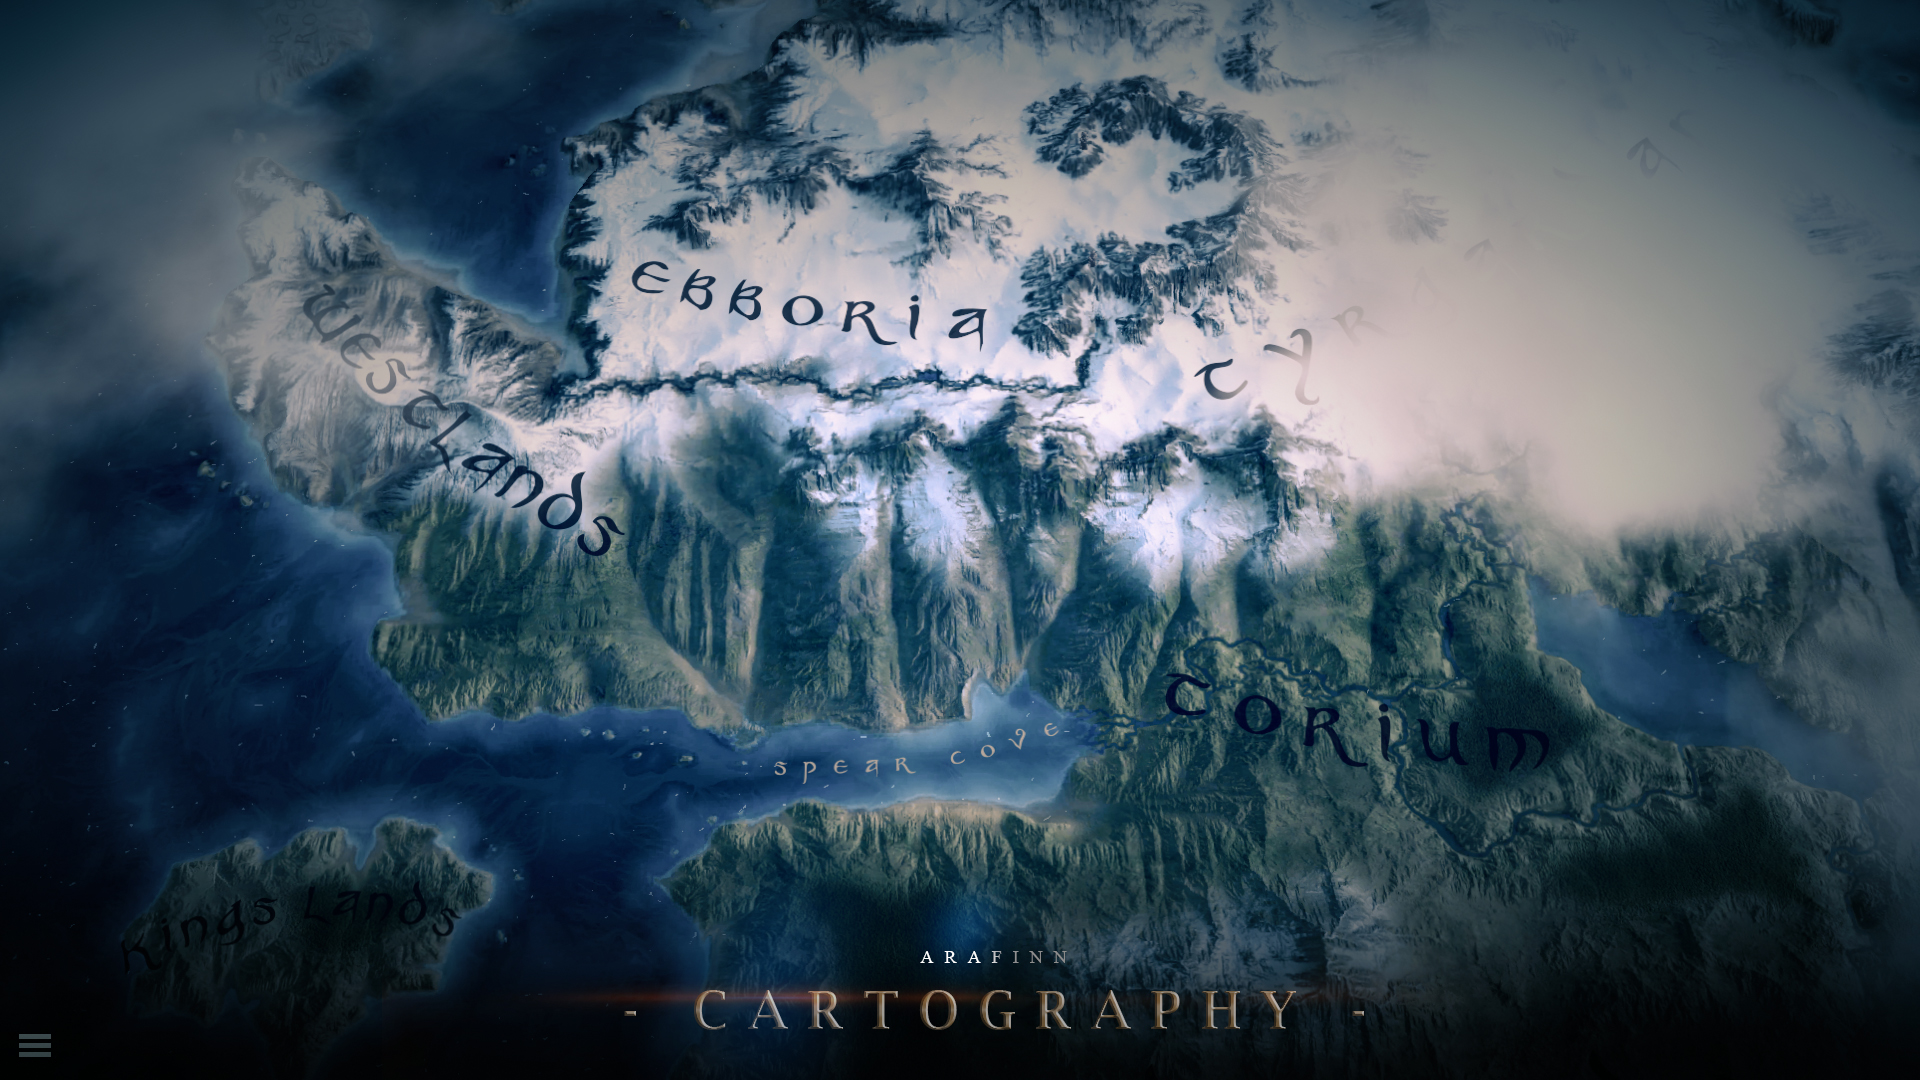 arfinn cartography 001